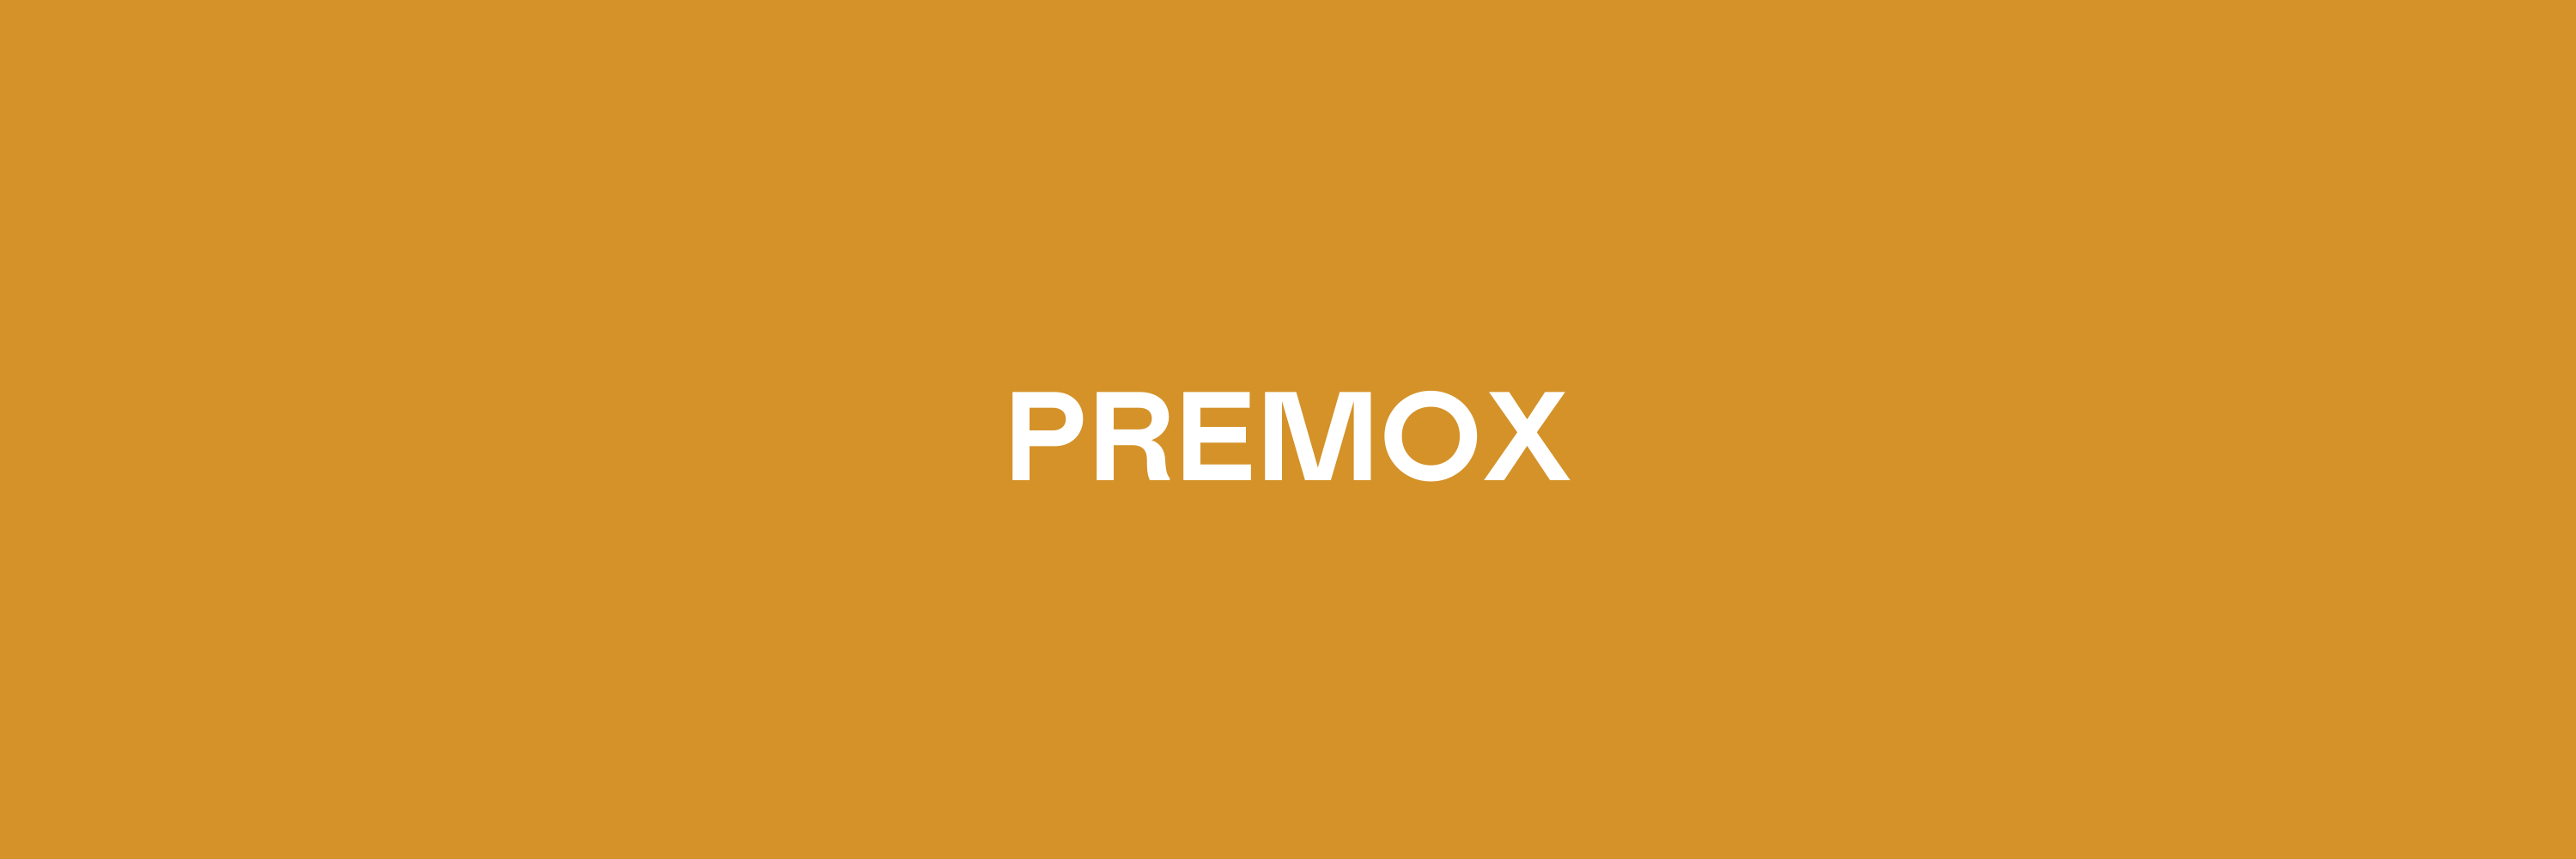 Premox